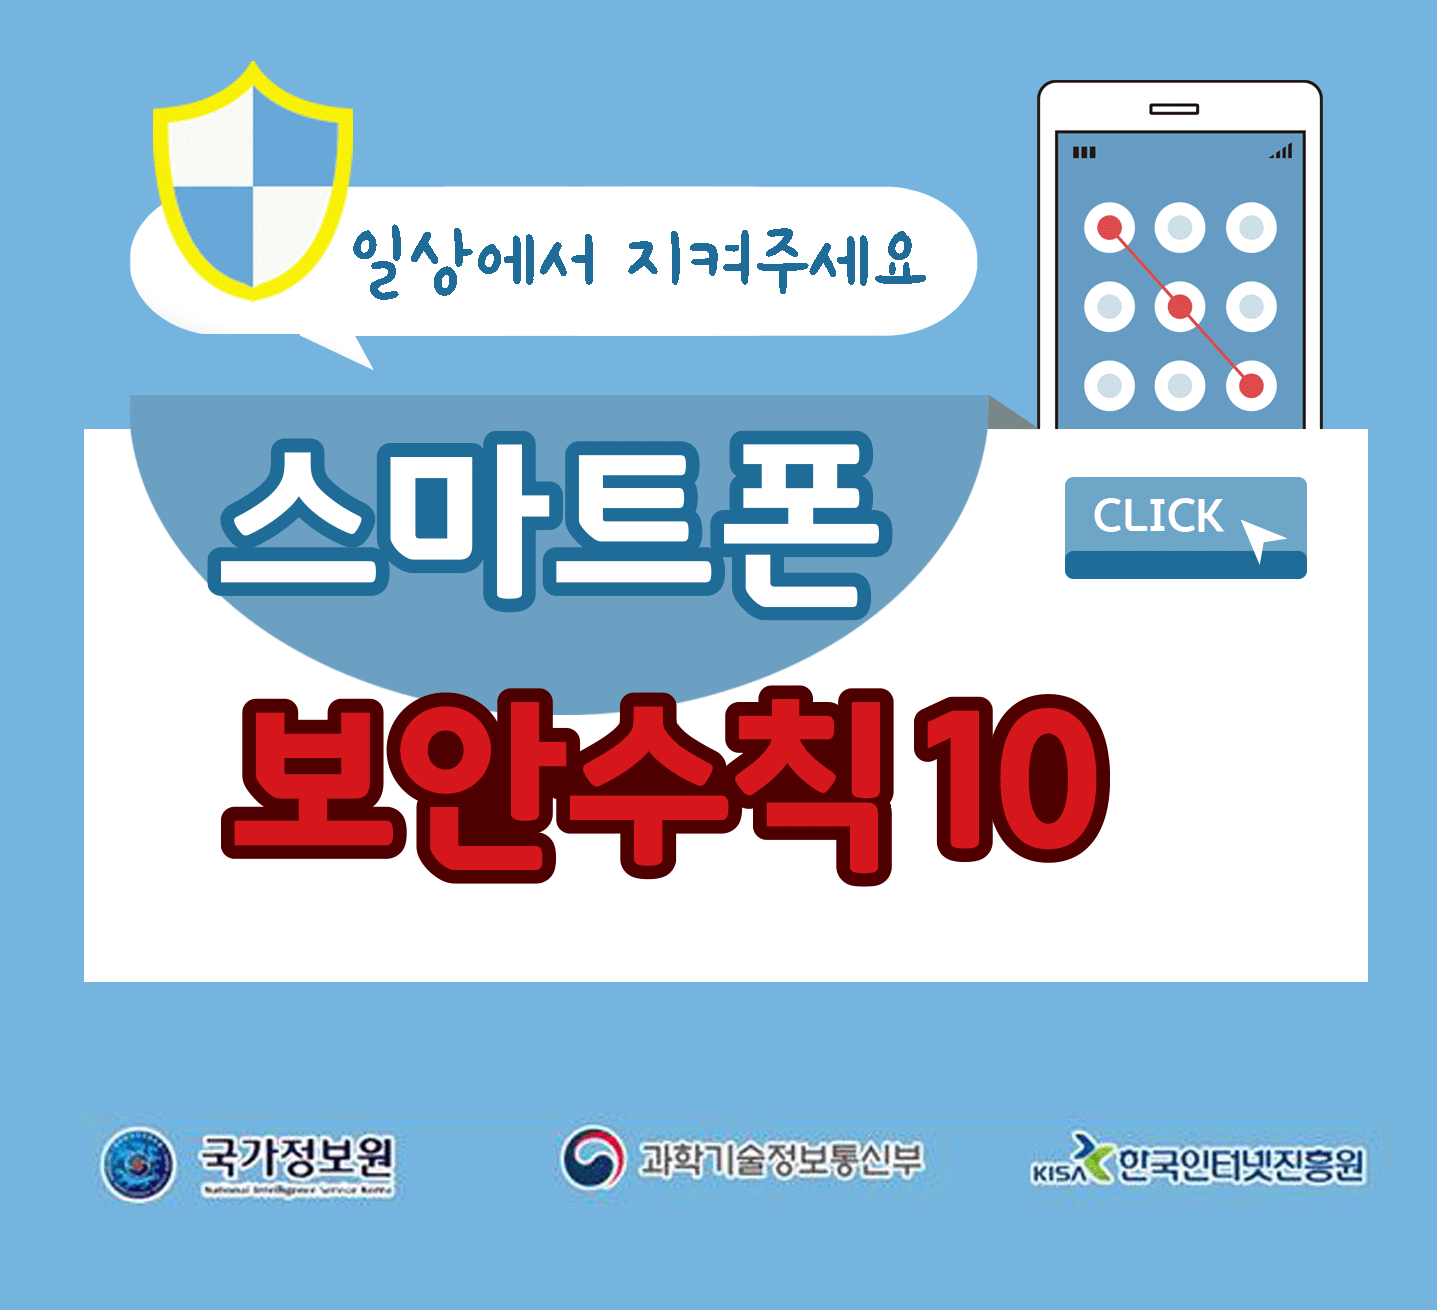 일상에서 지켜주세요
스마트폰 보안수칙 10 CLICK
국가정보원, 과학기술정보통신부, 한국인터넷진흥원;jsessionid=D1C03B154D2CFEDACF8AA1E7BE270097